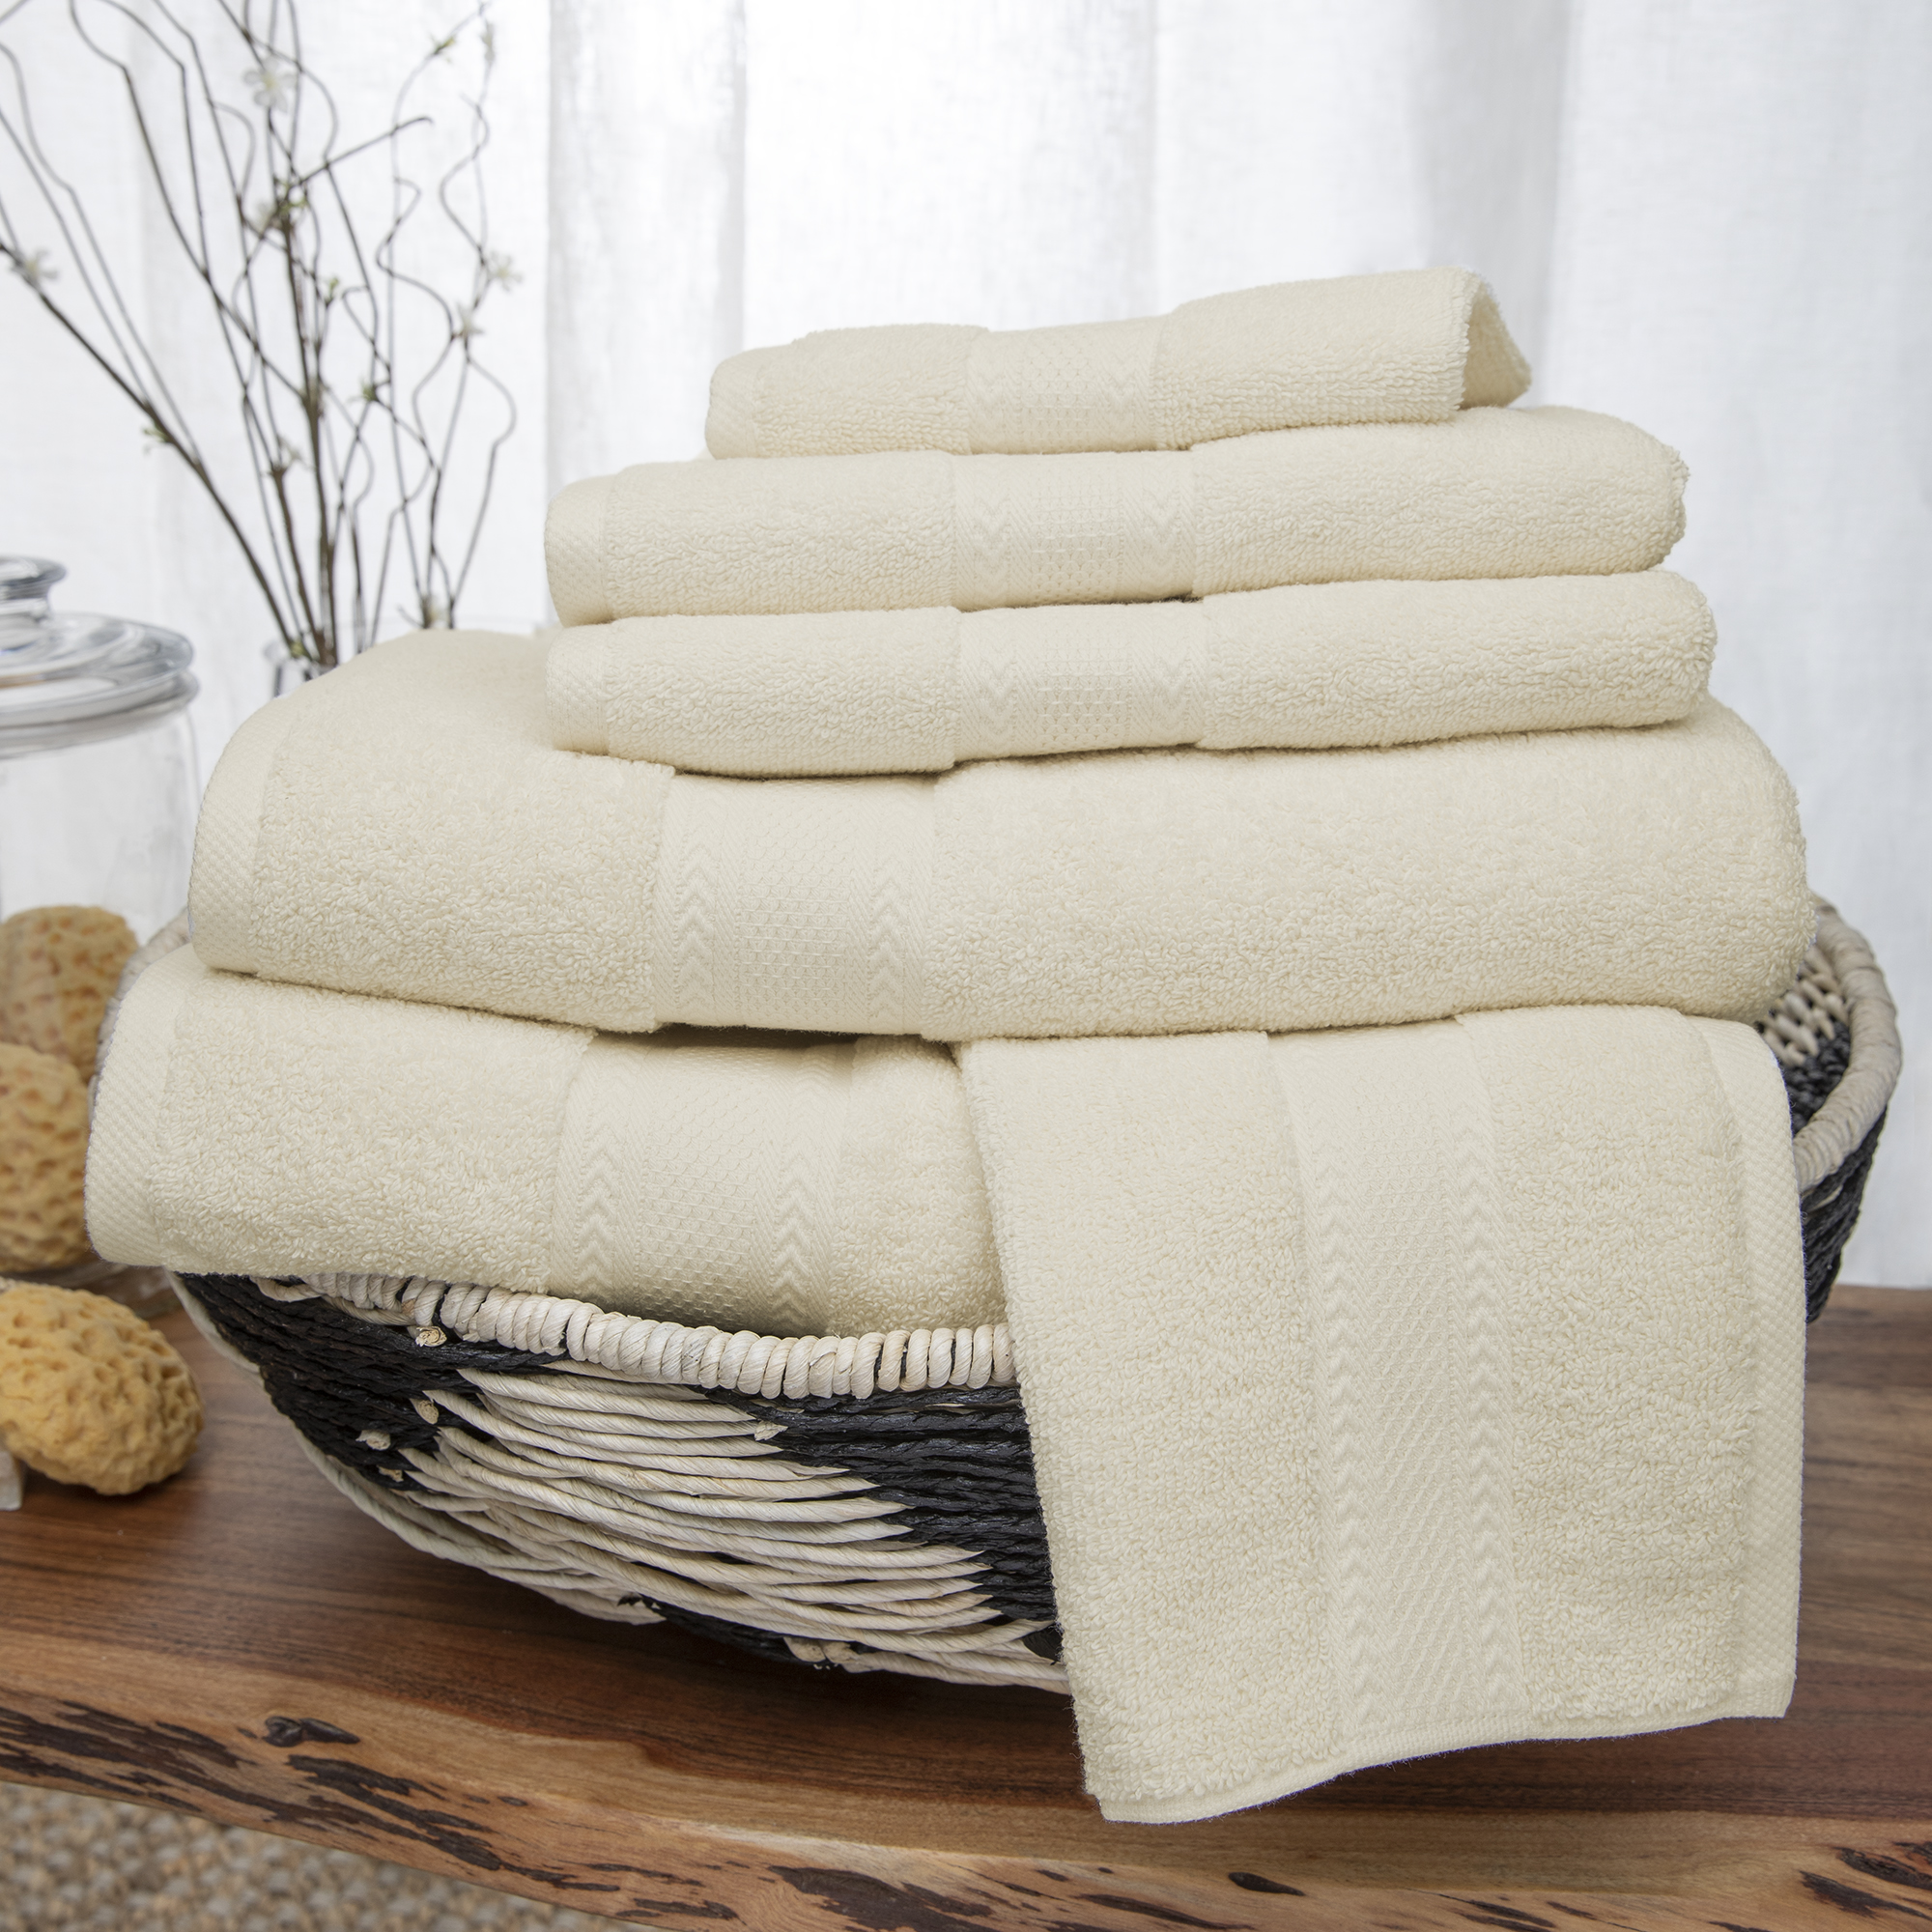 Endure Luxury Super Soft 100 Percent Cotton 6 Piece Bath Towel Set - image 2 of 3